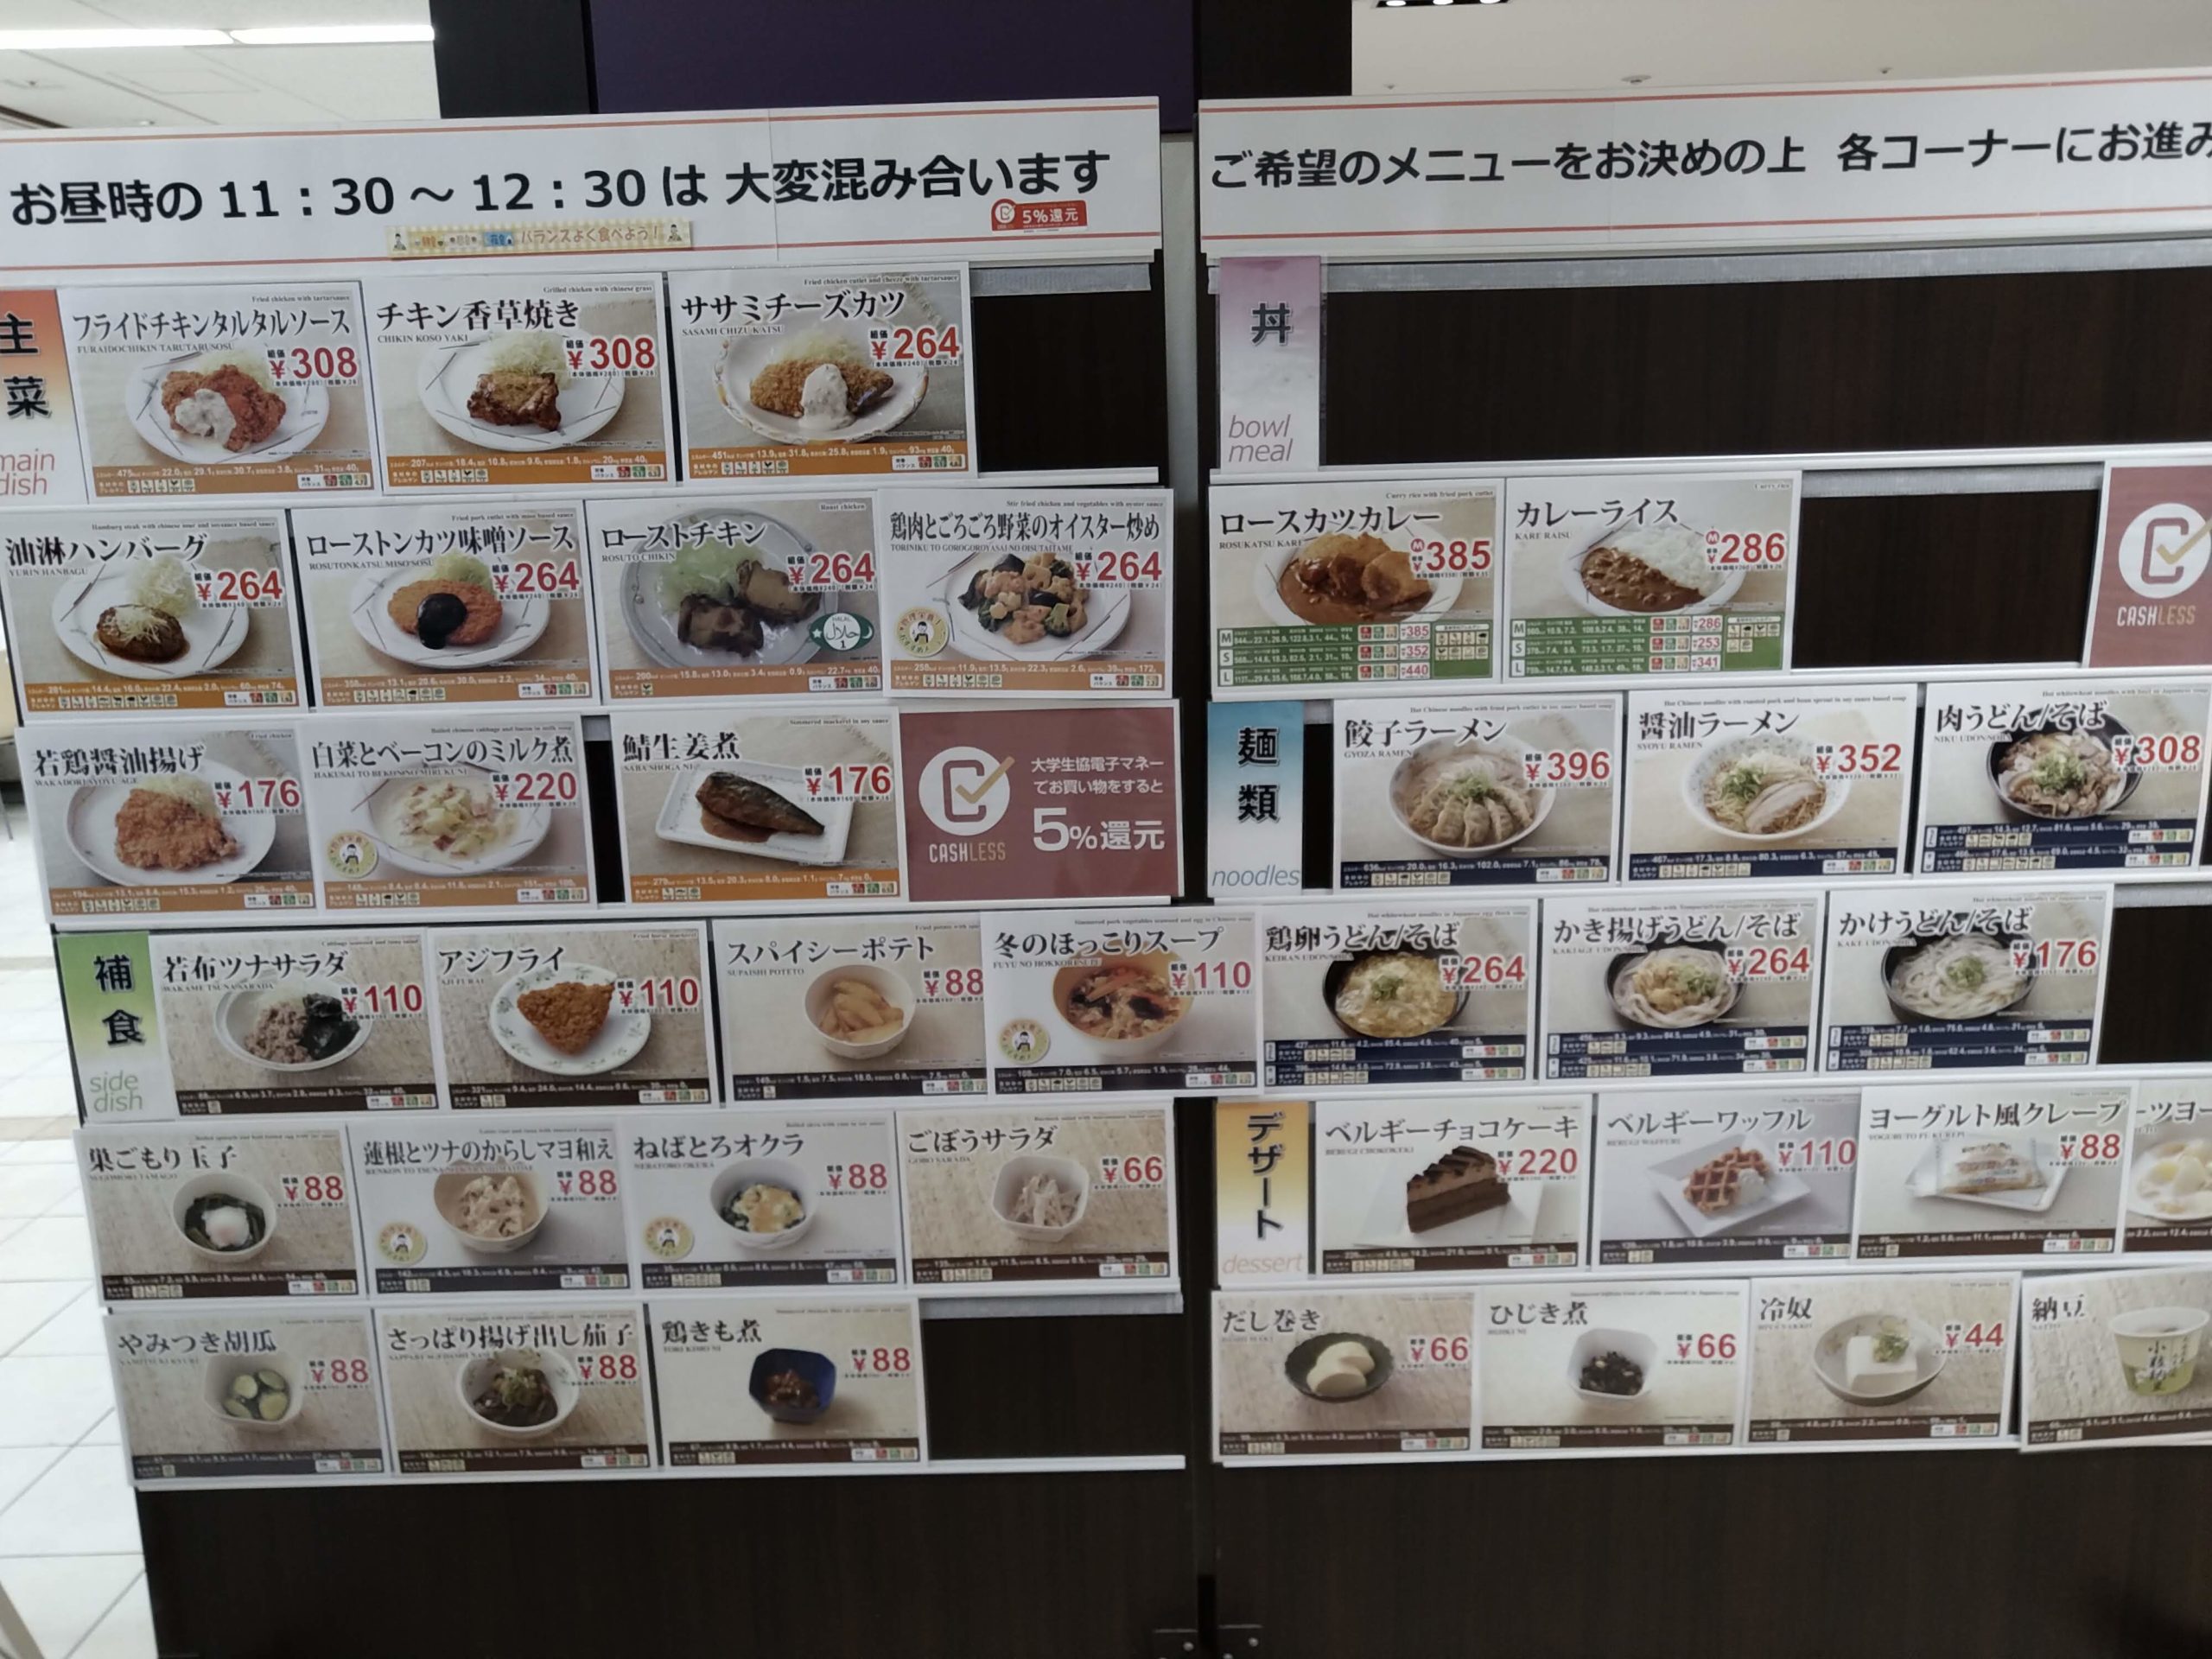 同志社大学 今出川キャンパスの学食 良心館食堂 は一般人も利用できる 京都ストーリー